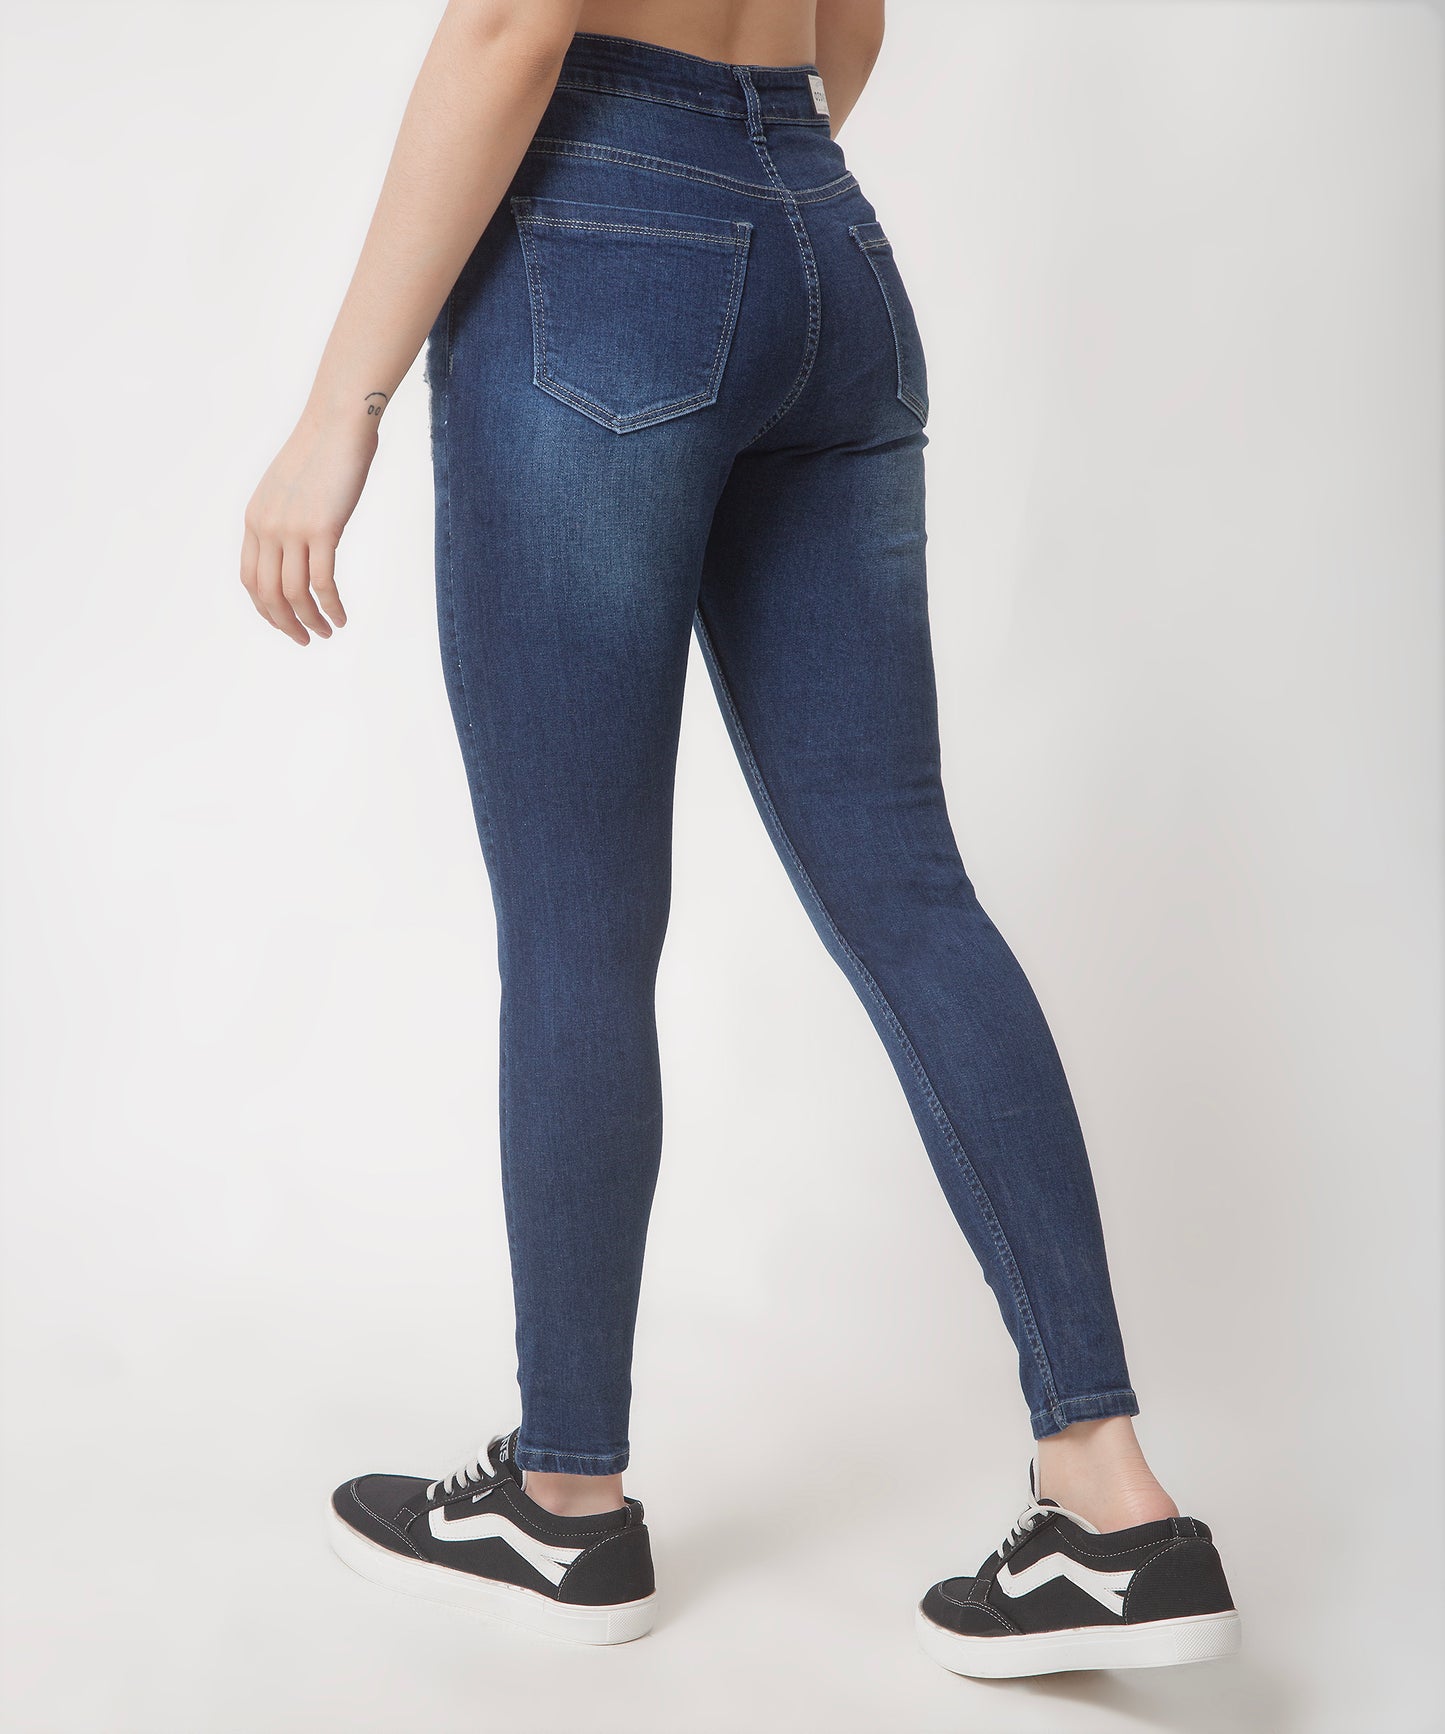 Women Classy Blue Denim Jeans